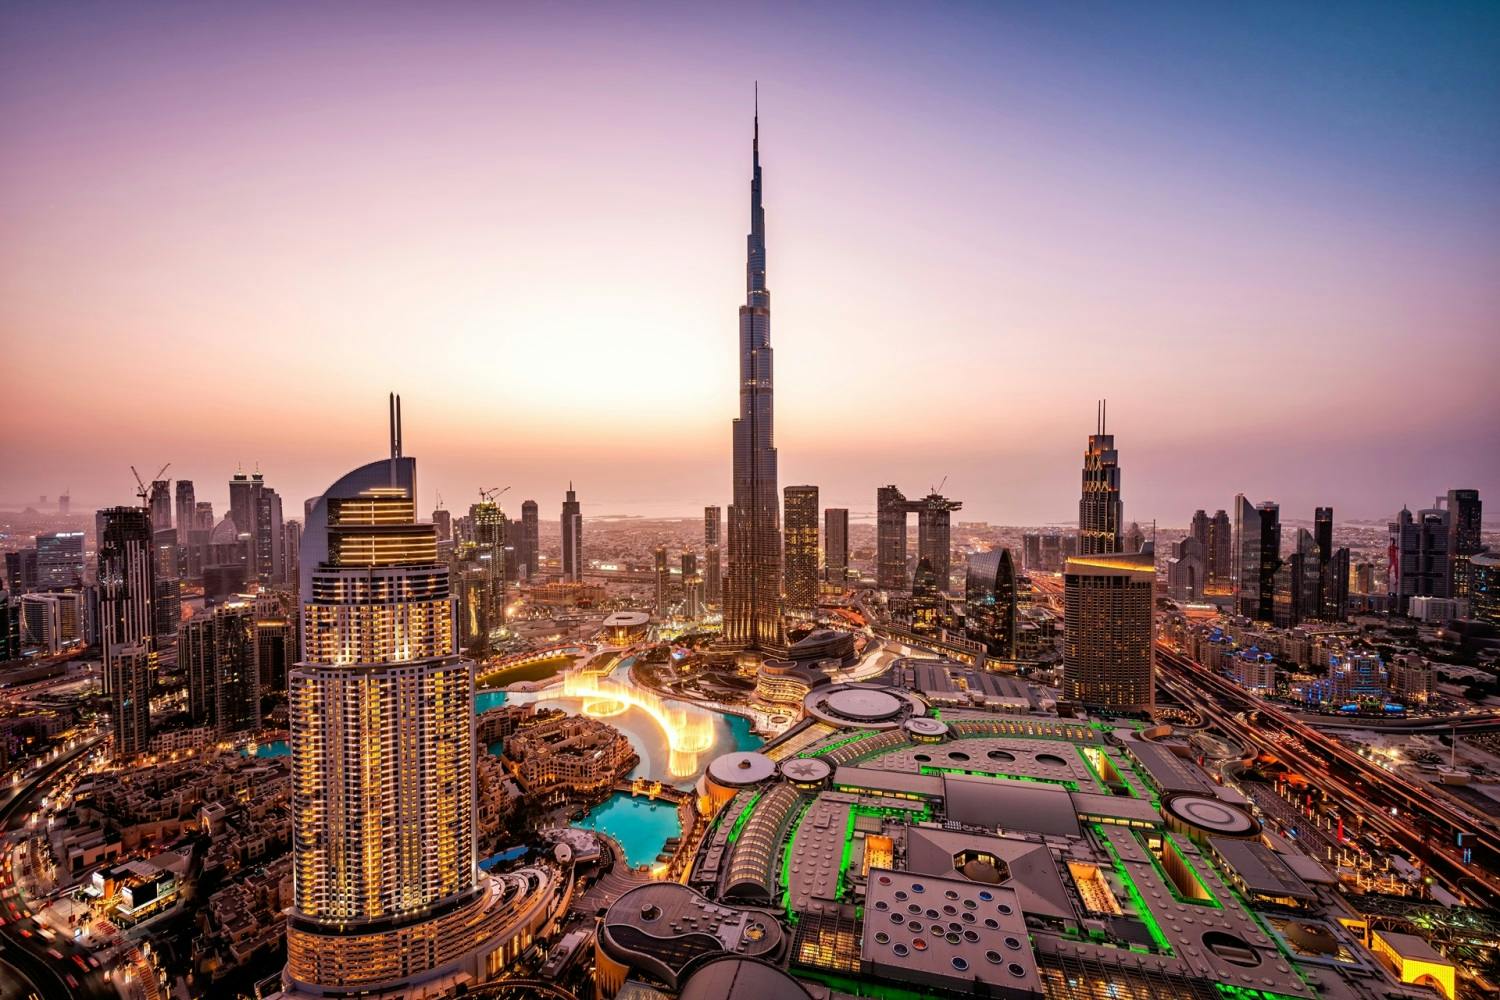 Tour de 1 día a Dubái con visita al Burj Khalifa desde Abu Dabi